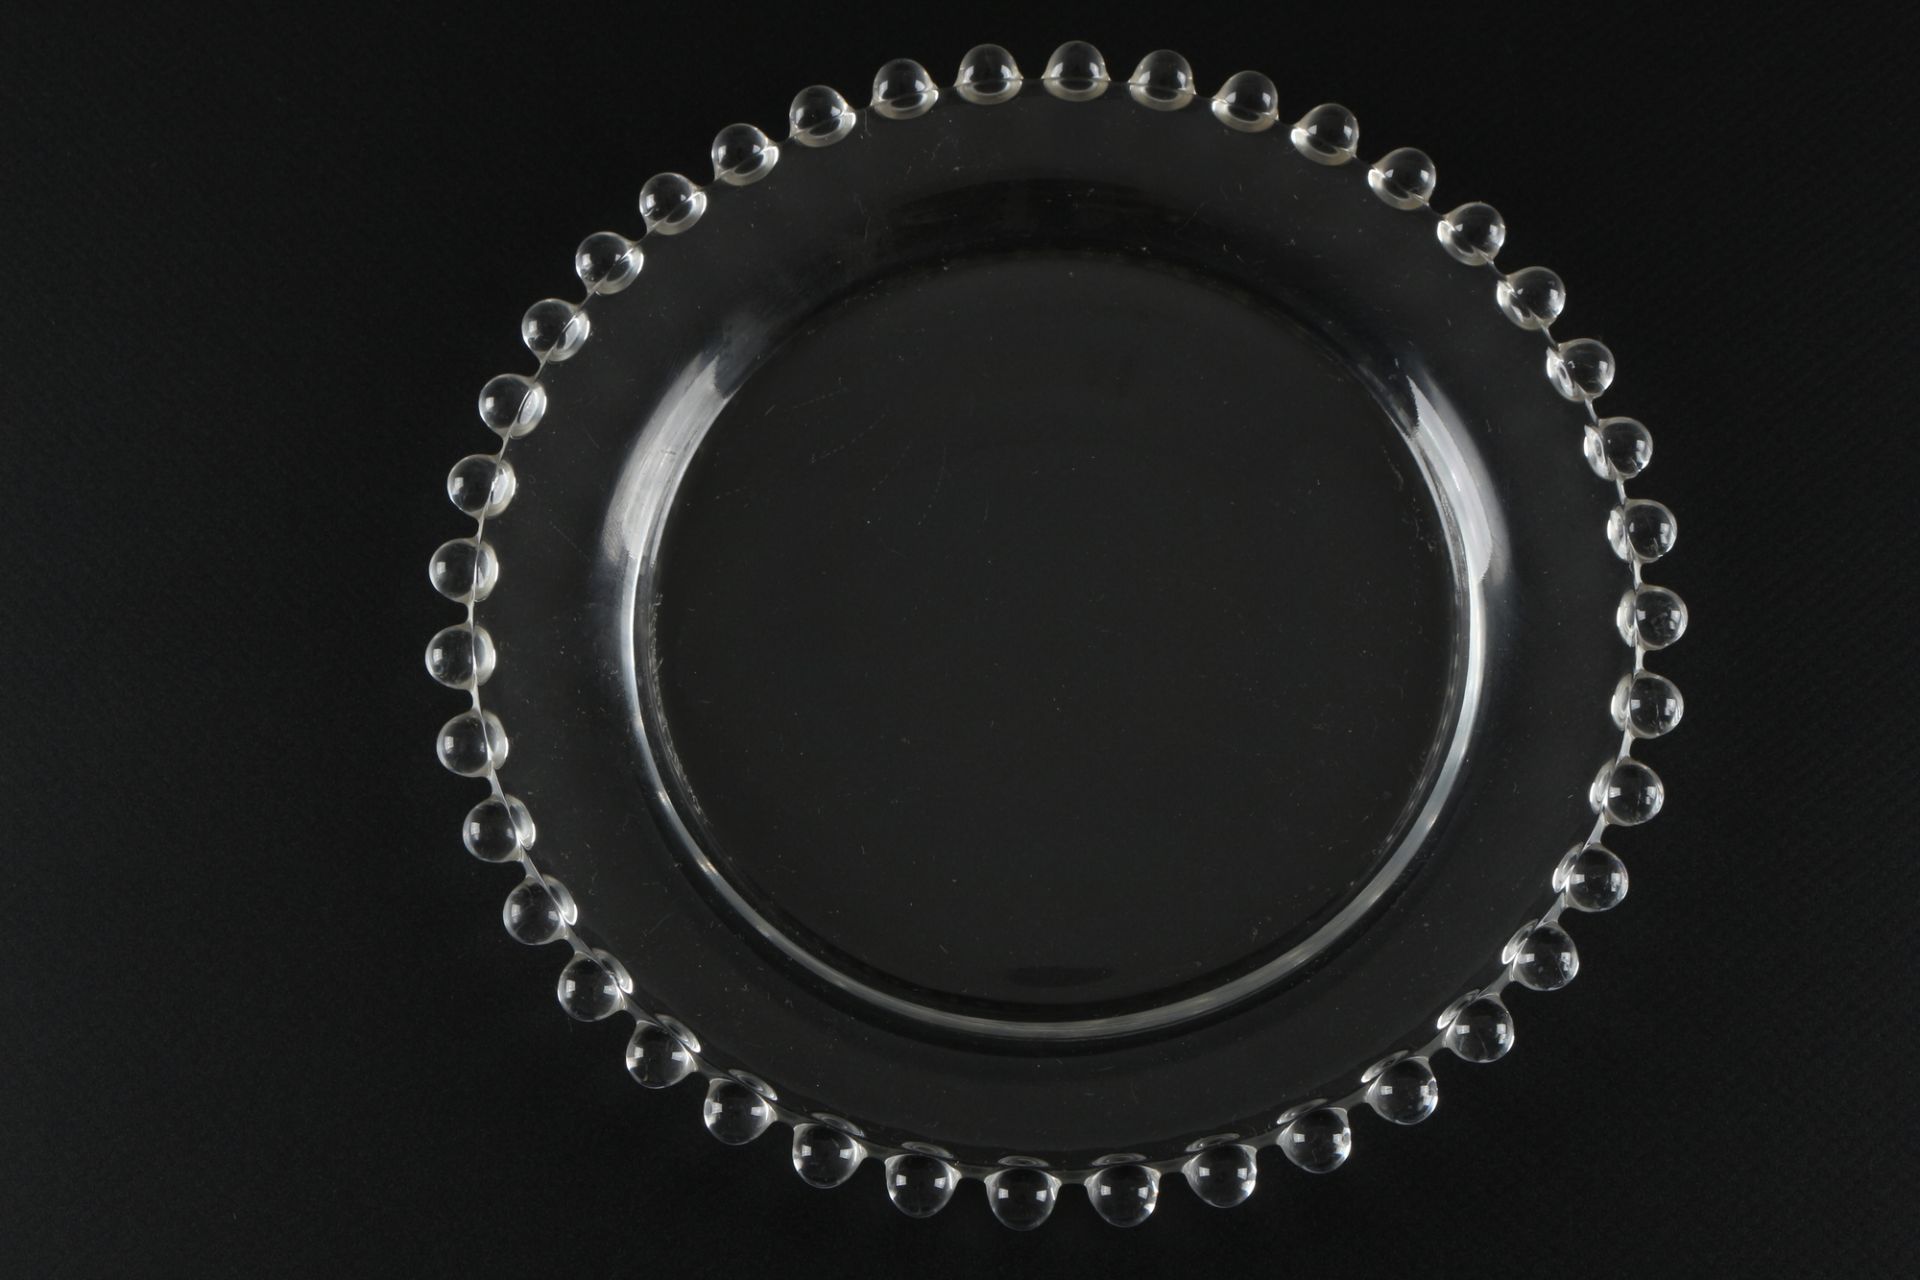 Lalique Andlau 6 Dessertteller, crystal dessert plates, - Image 2 of 3